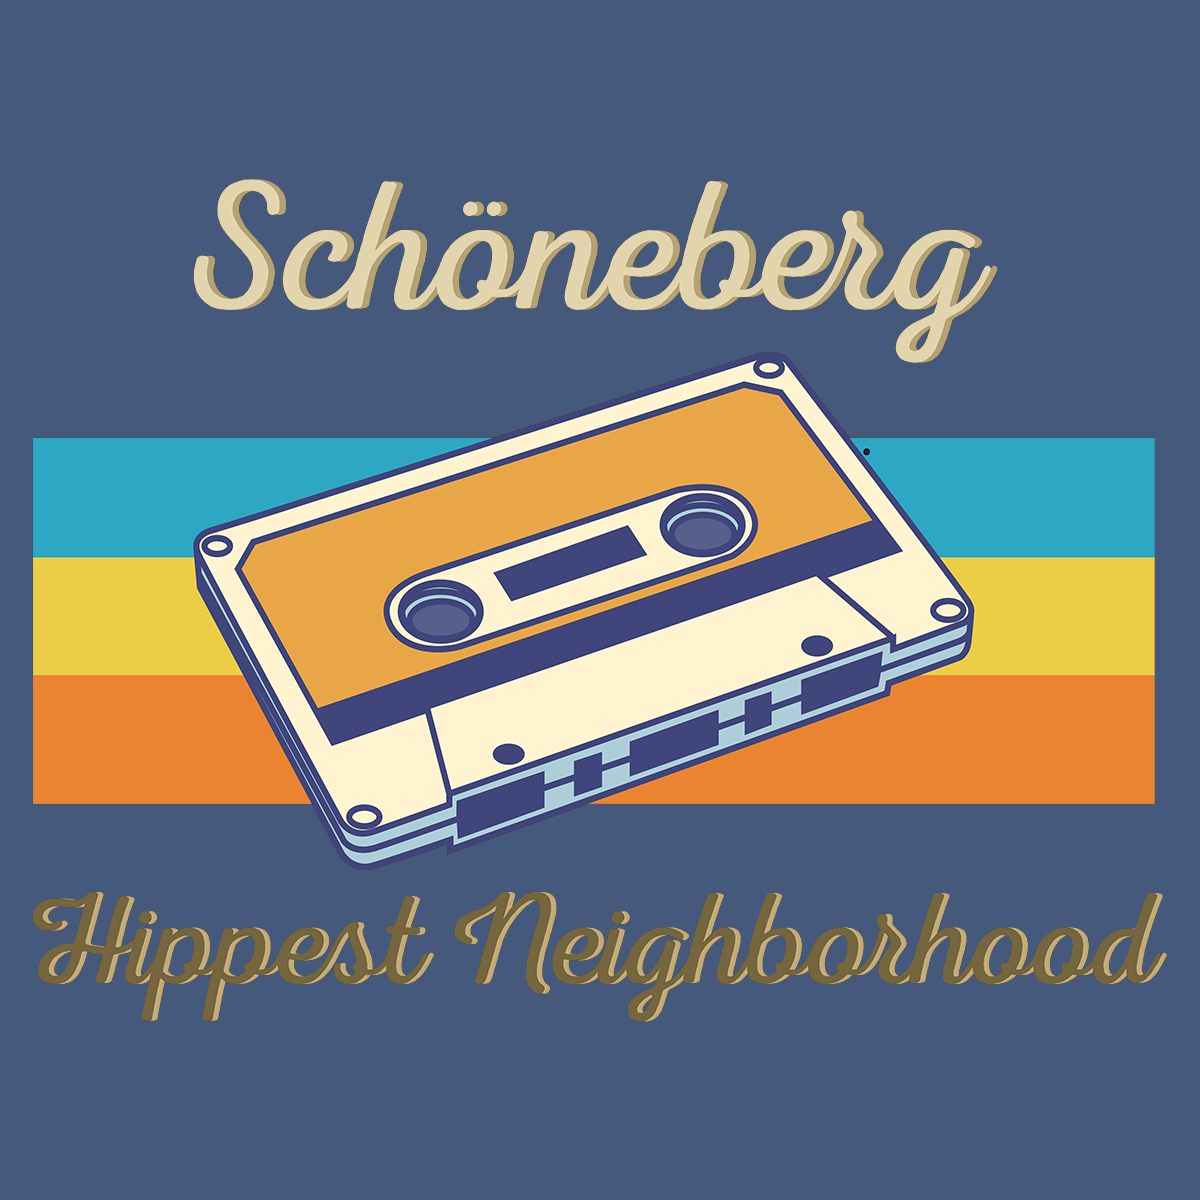 Schöneberg Hippest Neighborhood